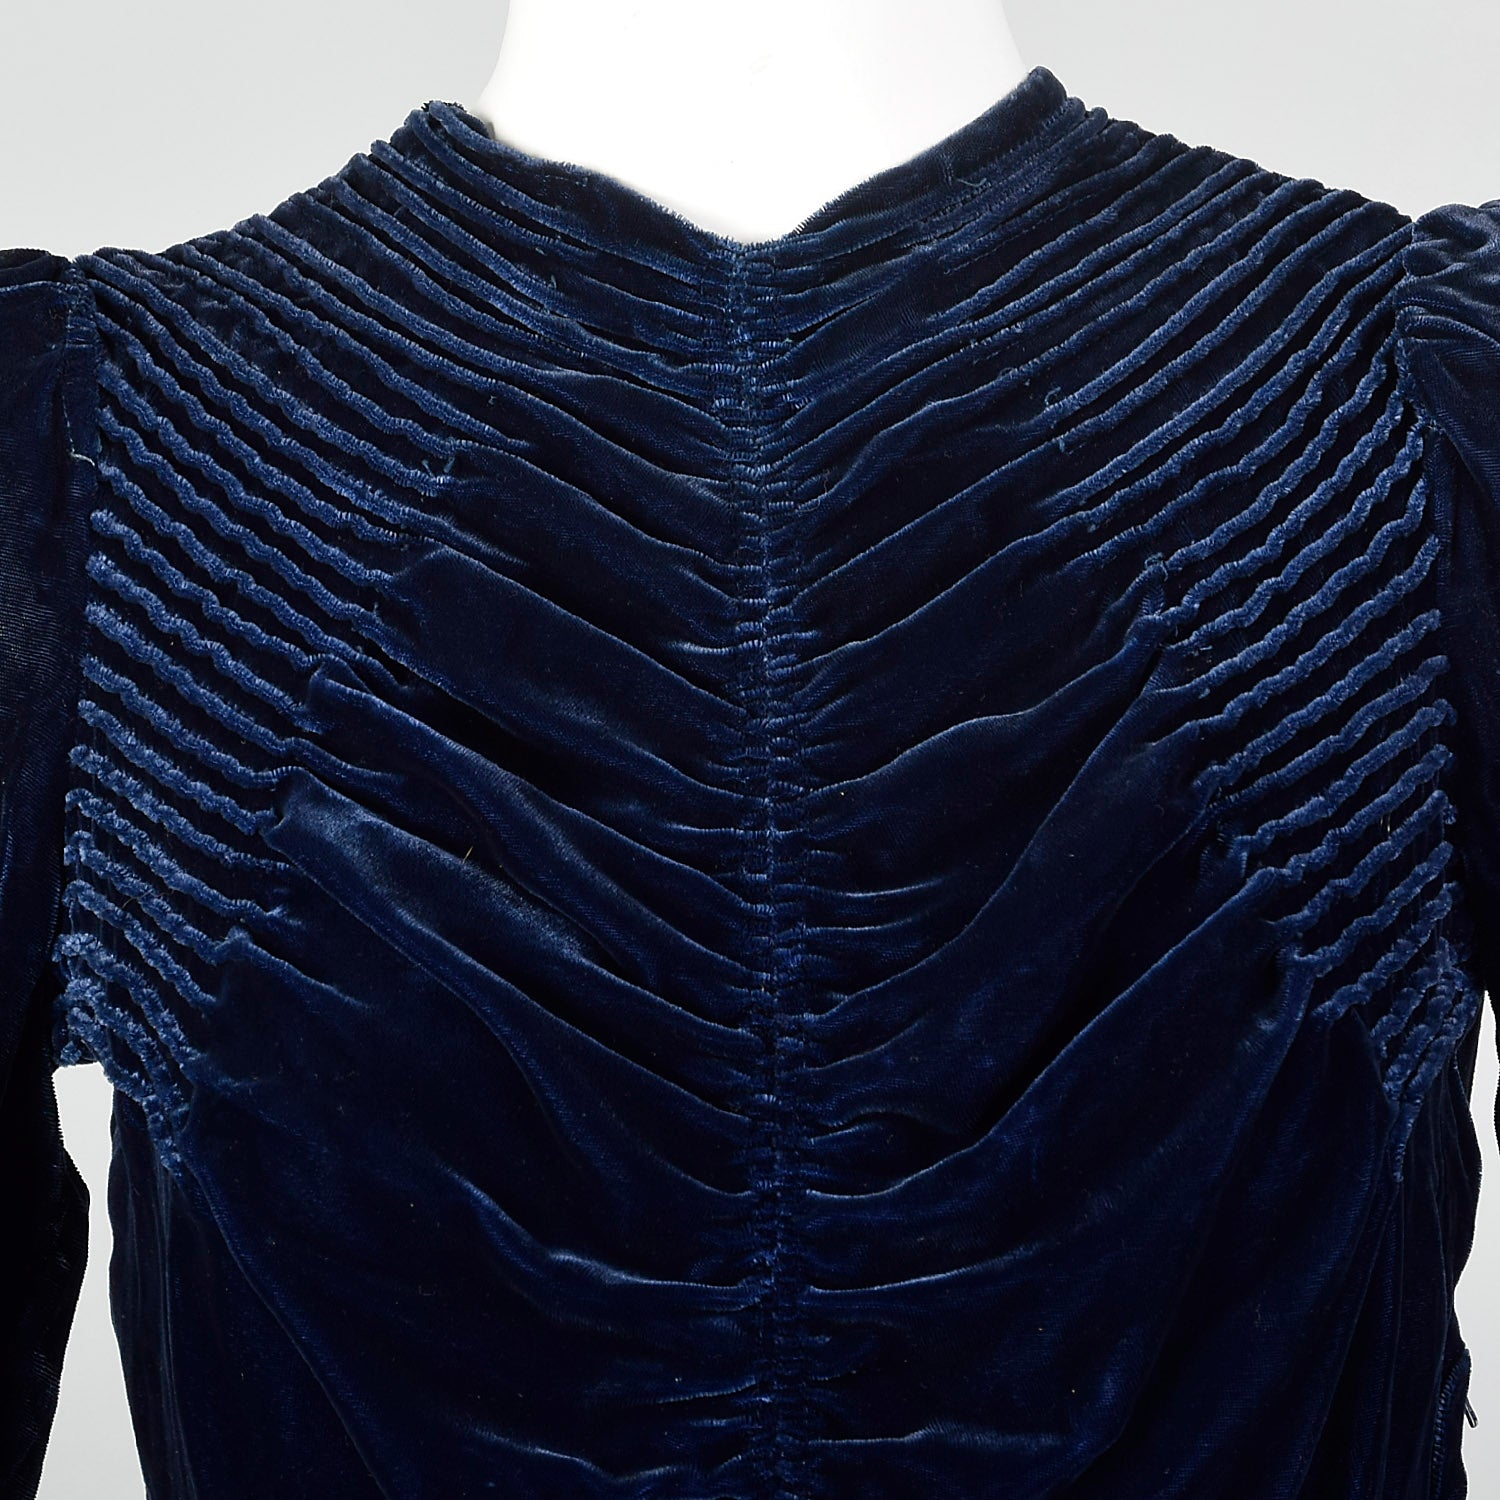 Small 1930s Blue Velvet Dress